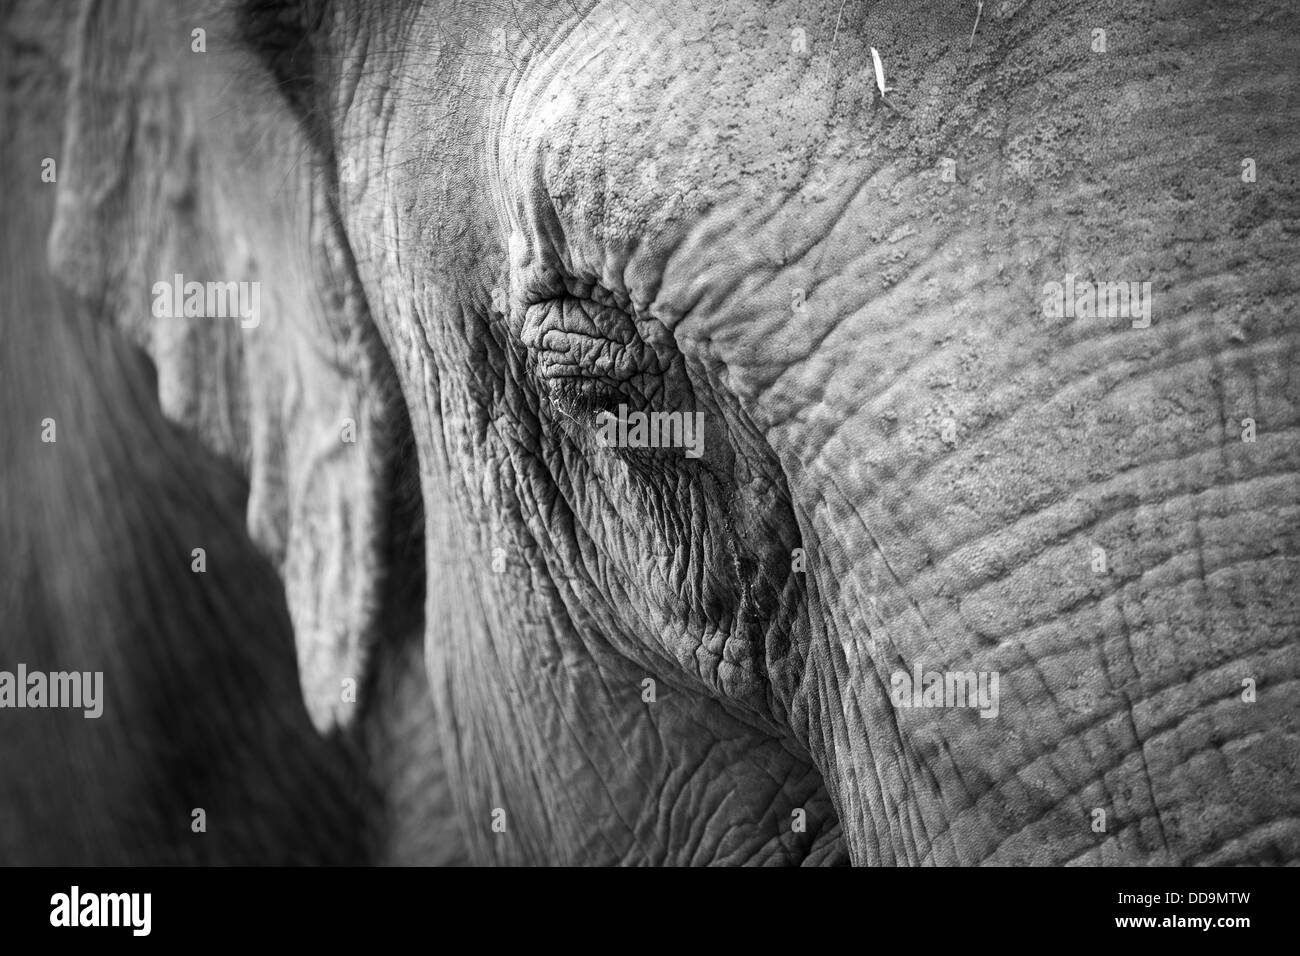 Elephants Eye Stock Photo